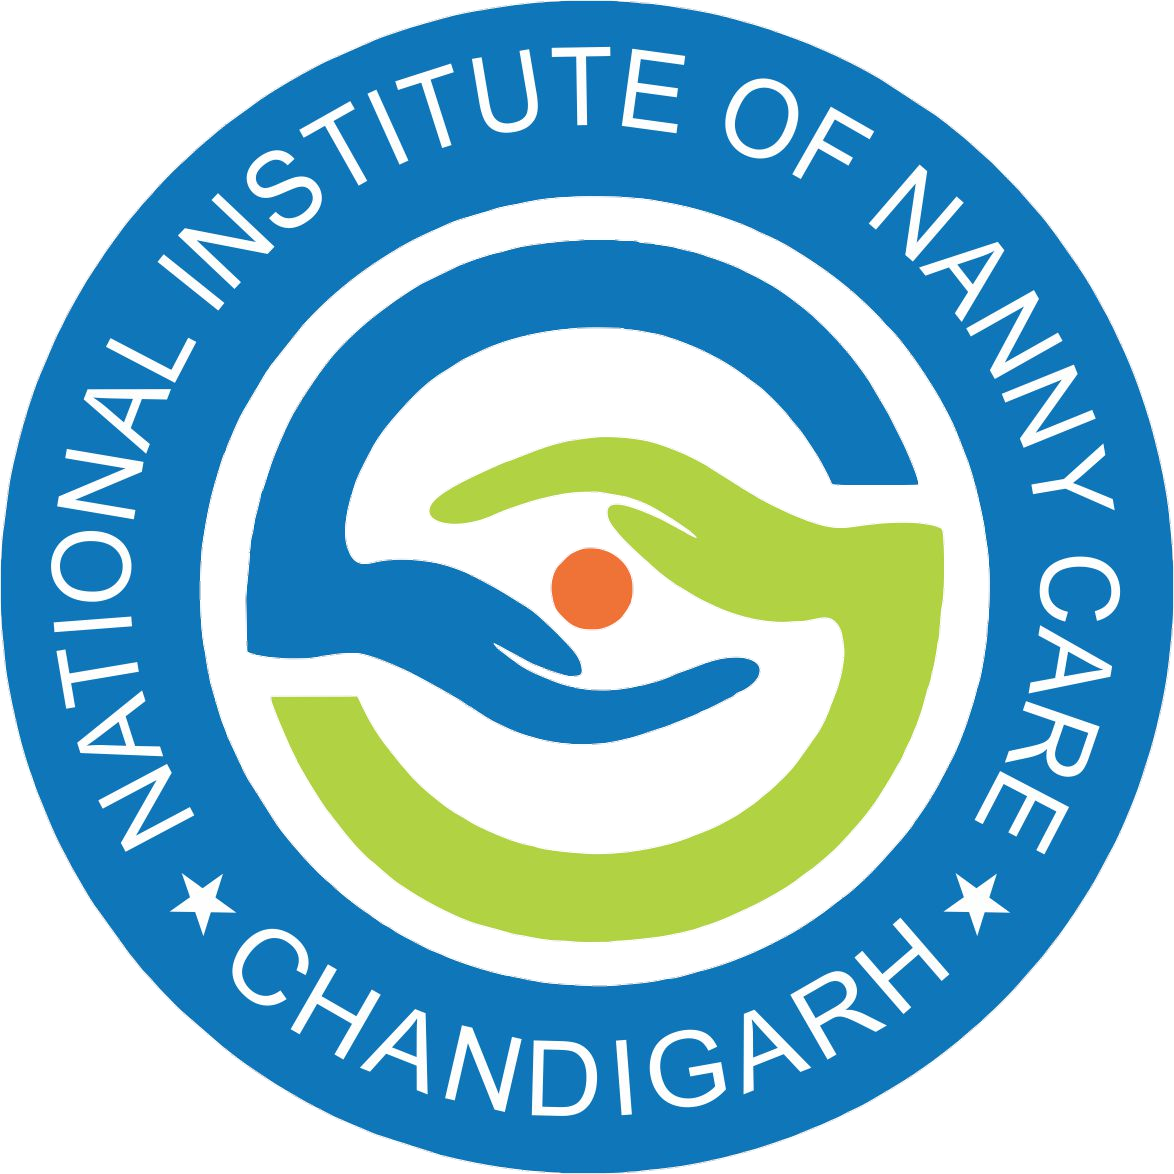 National Institute Chandigarh